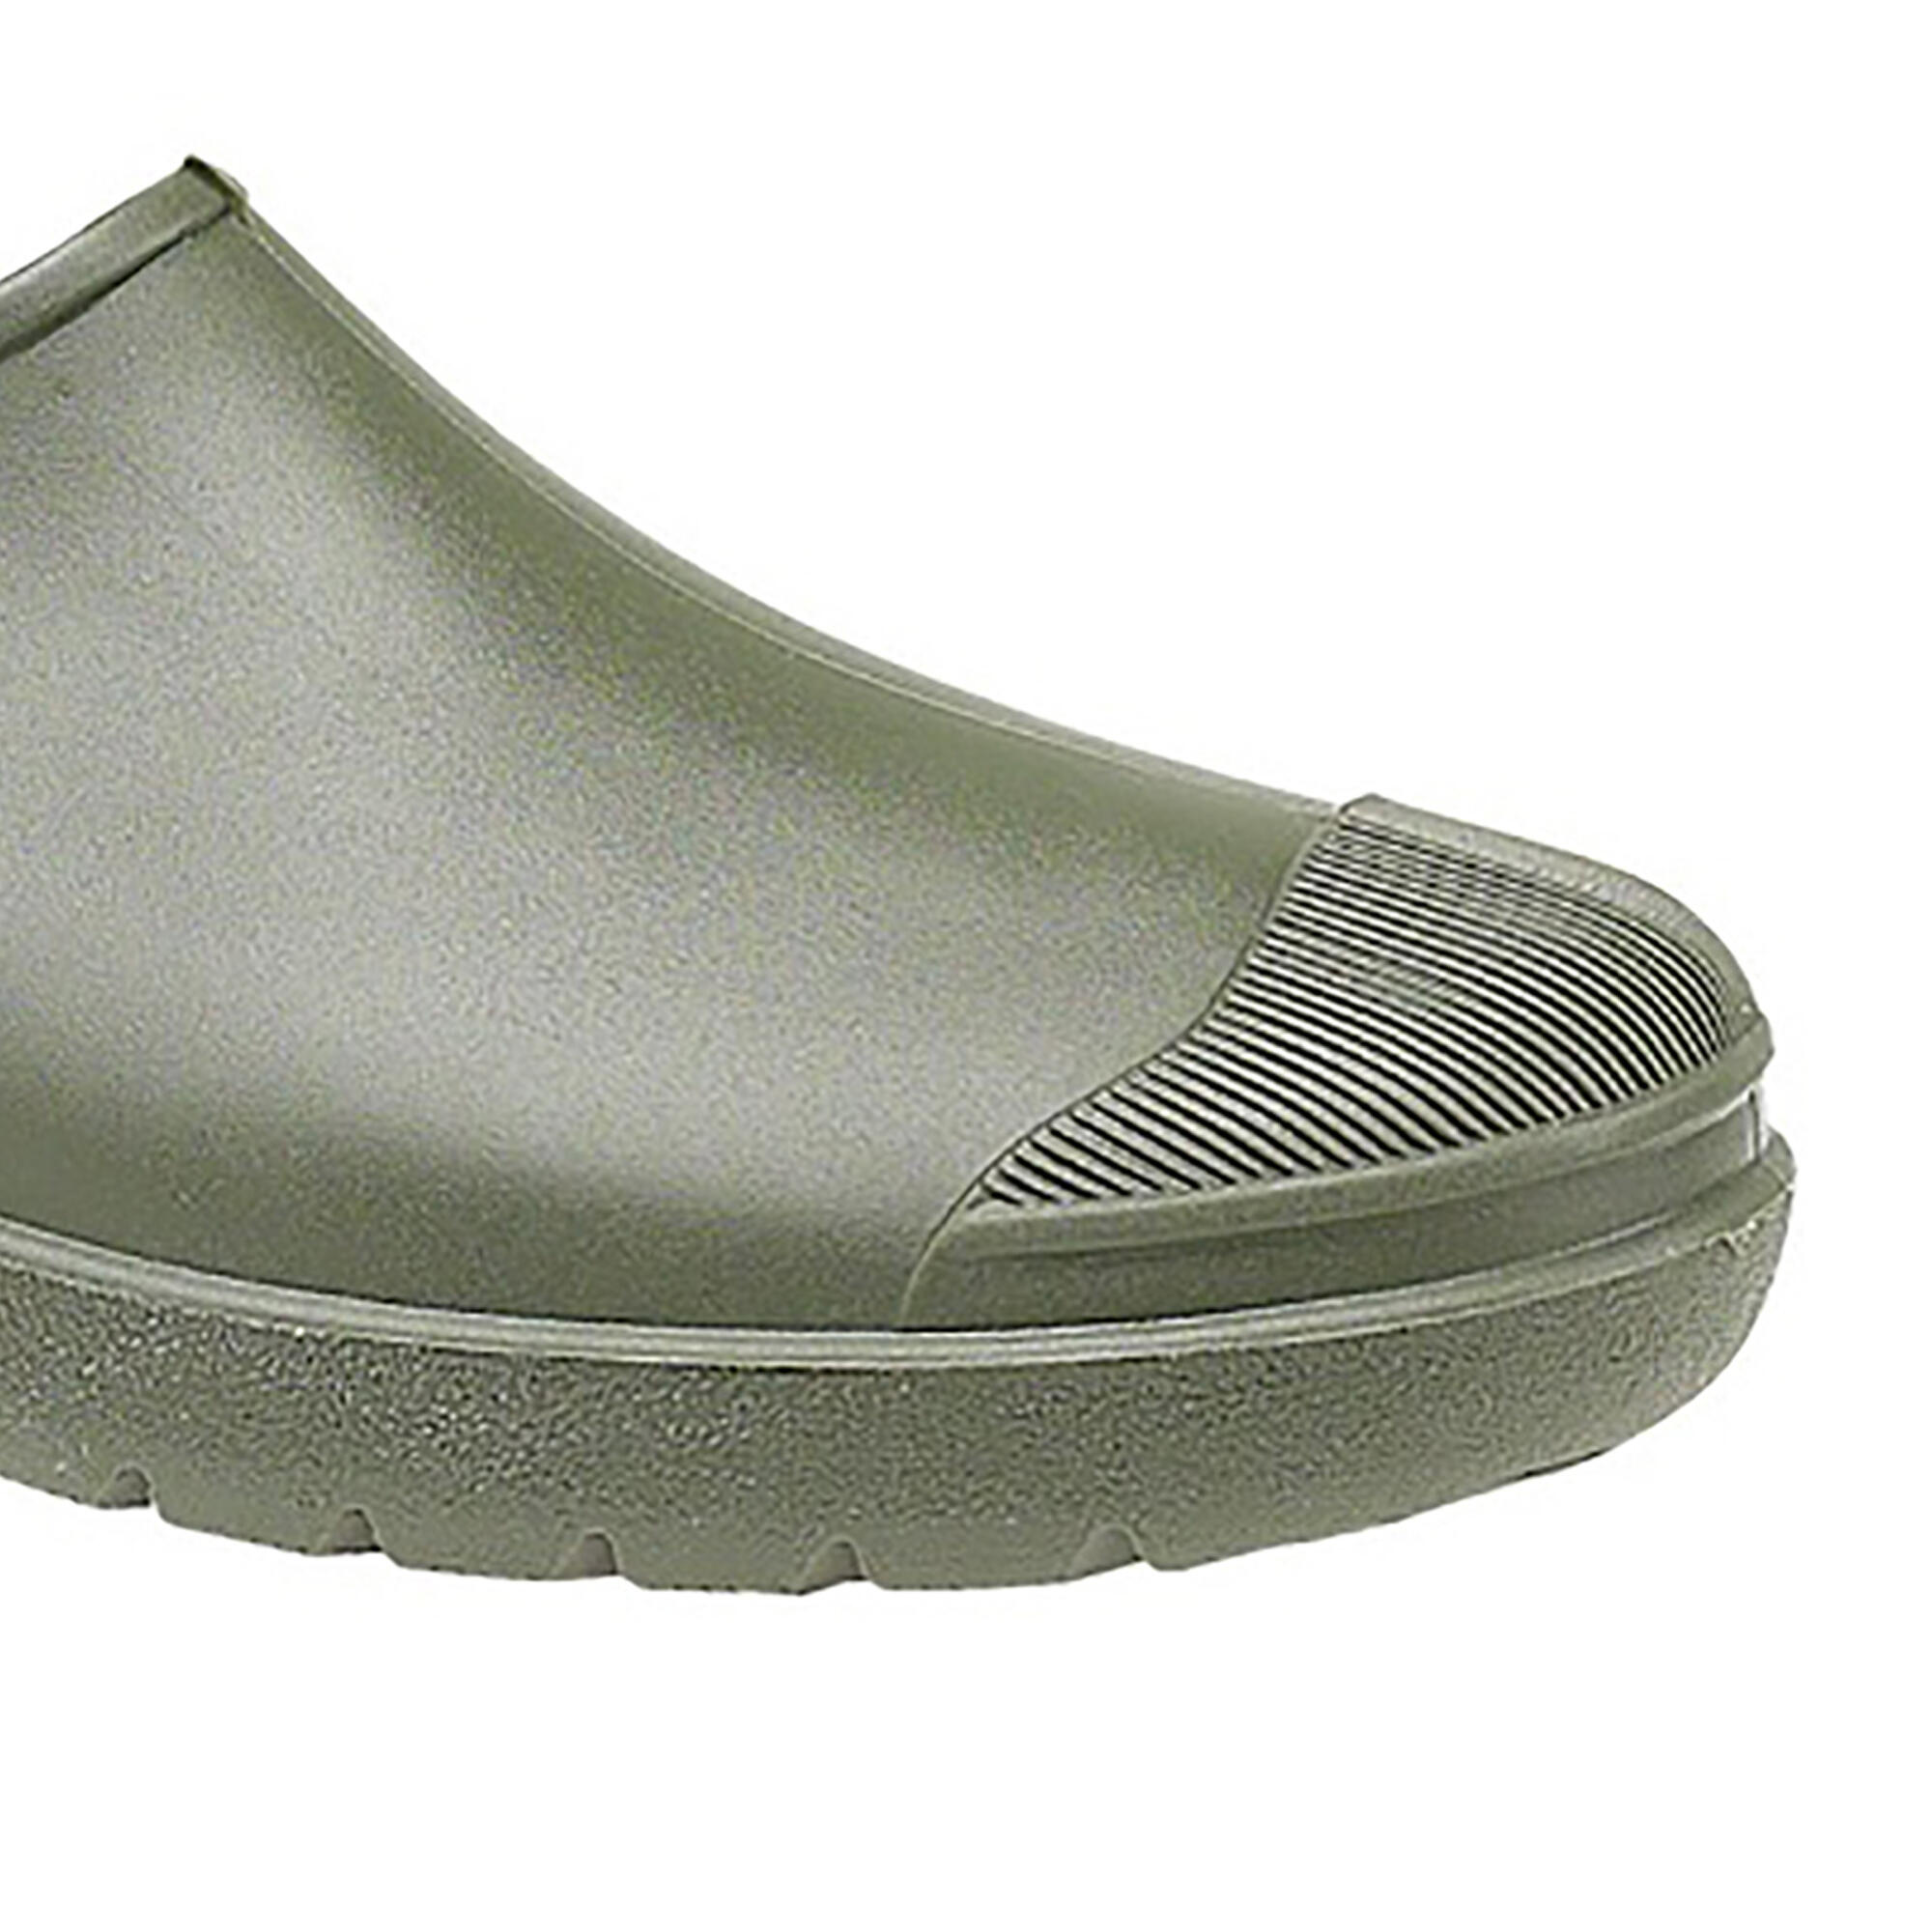 Dikimar Primera Gardening Shoe / Mens Shoes / Garden Shoes (Green) 3/3